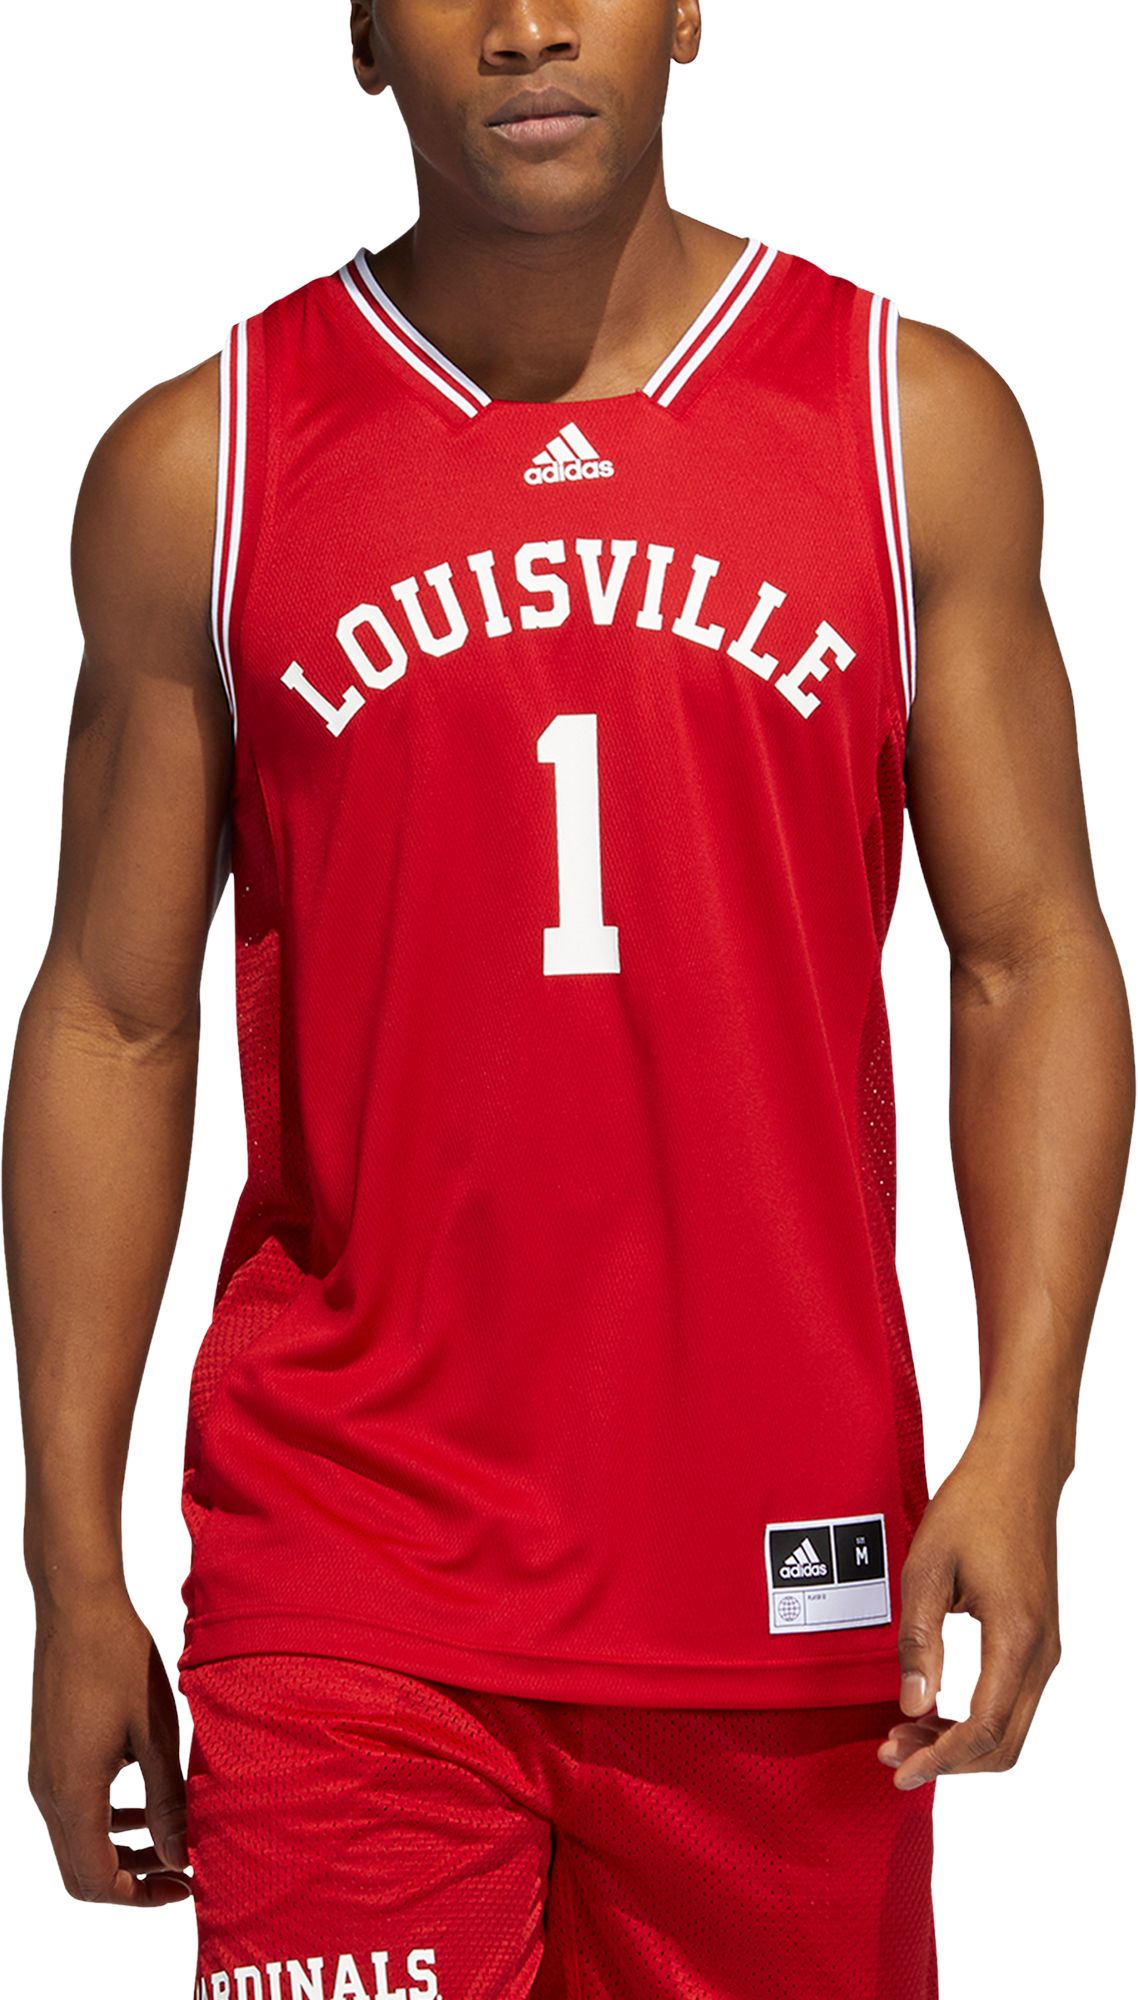 Adidas Men's Louisville Cardinals Wordmark Pullover Fleece Hoodie